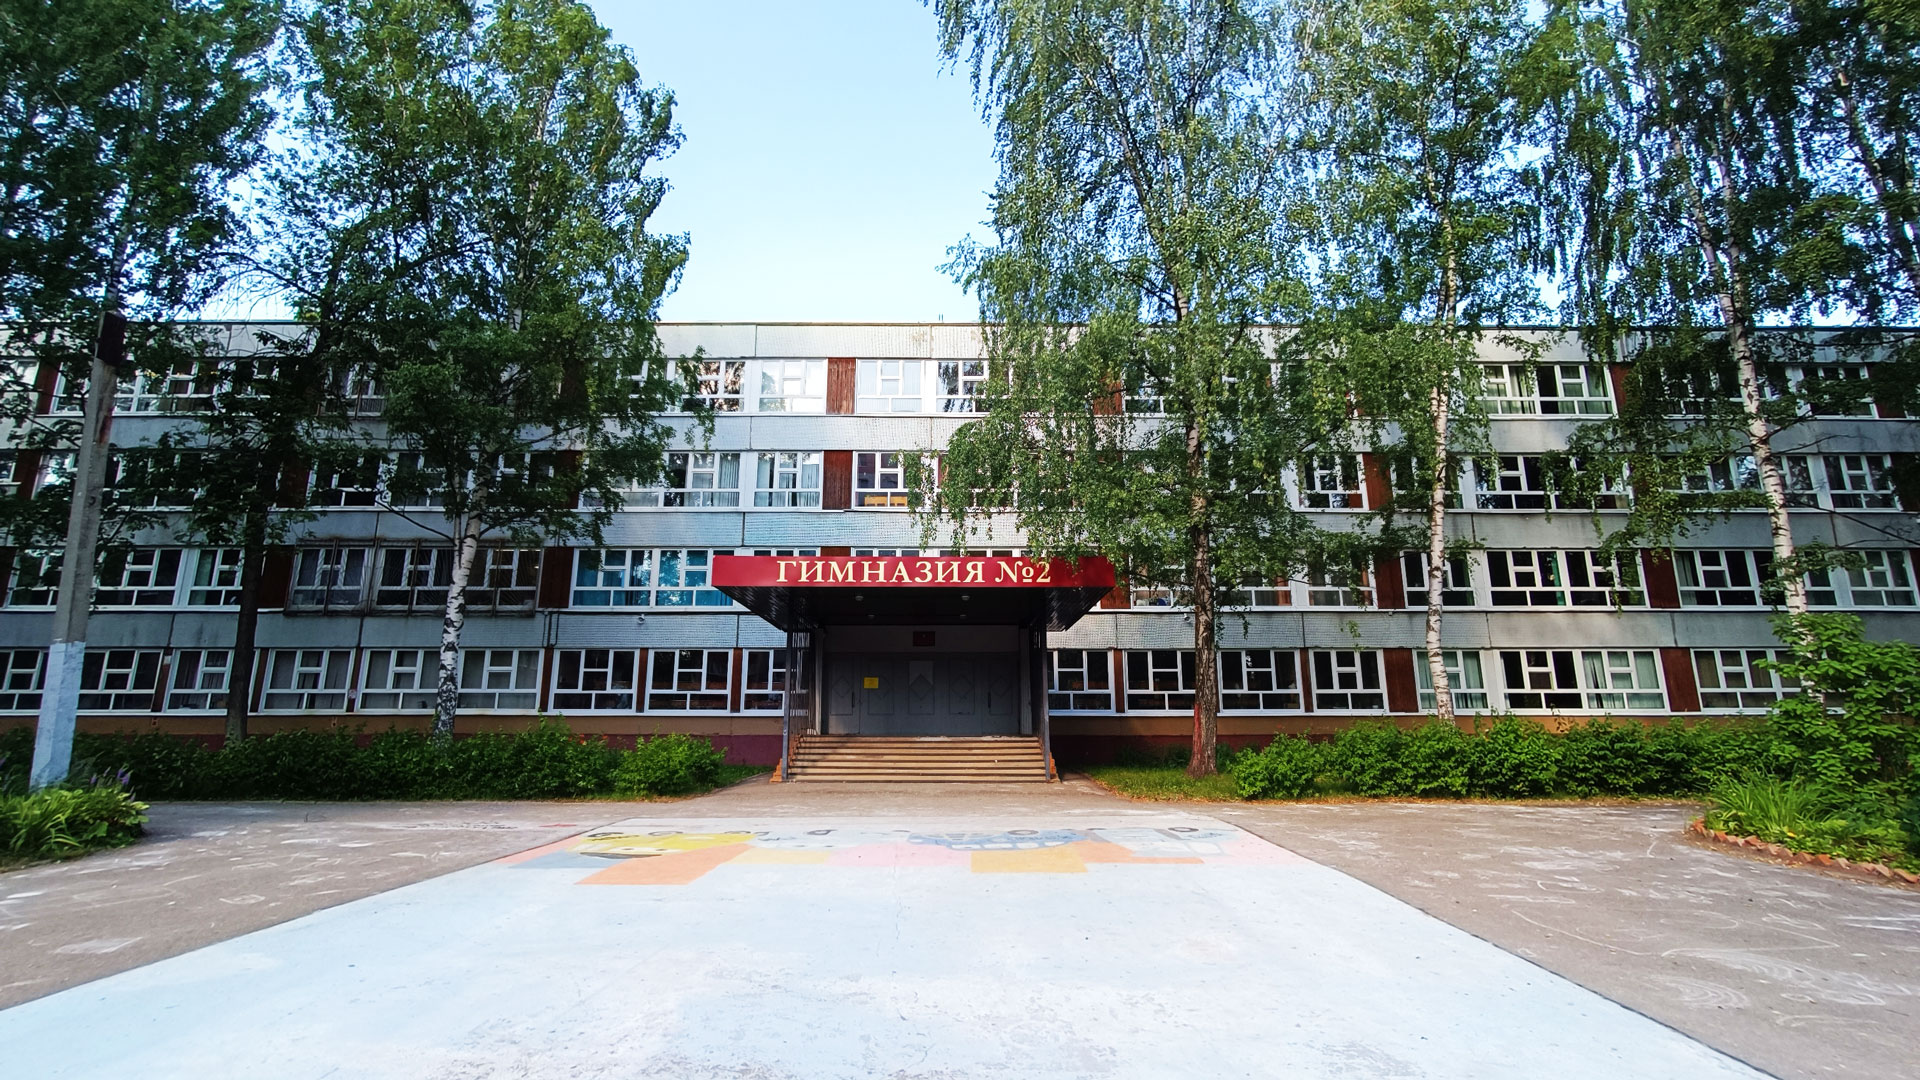 Гимназия 2 Ярославль: общий вид здания.